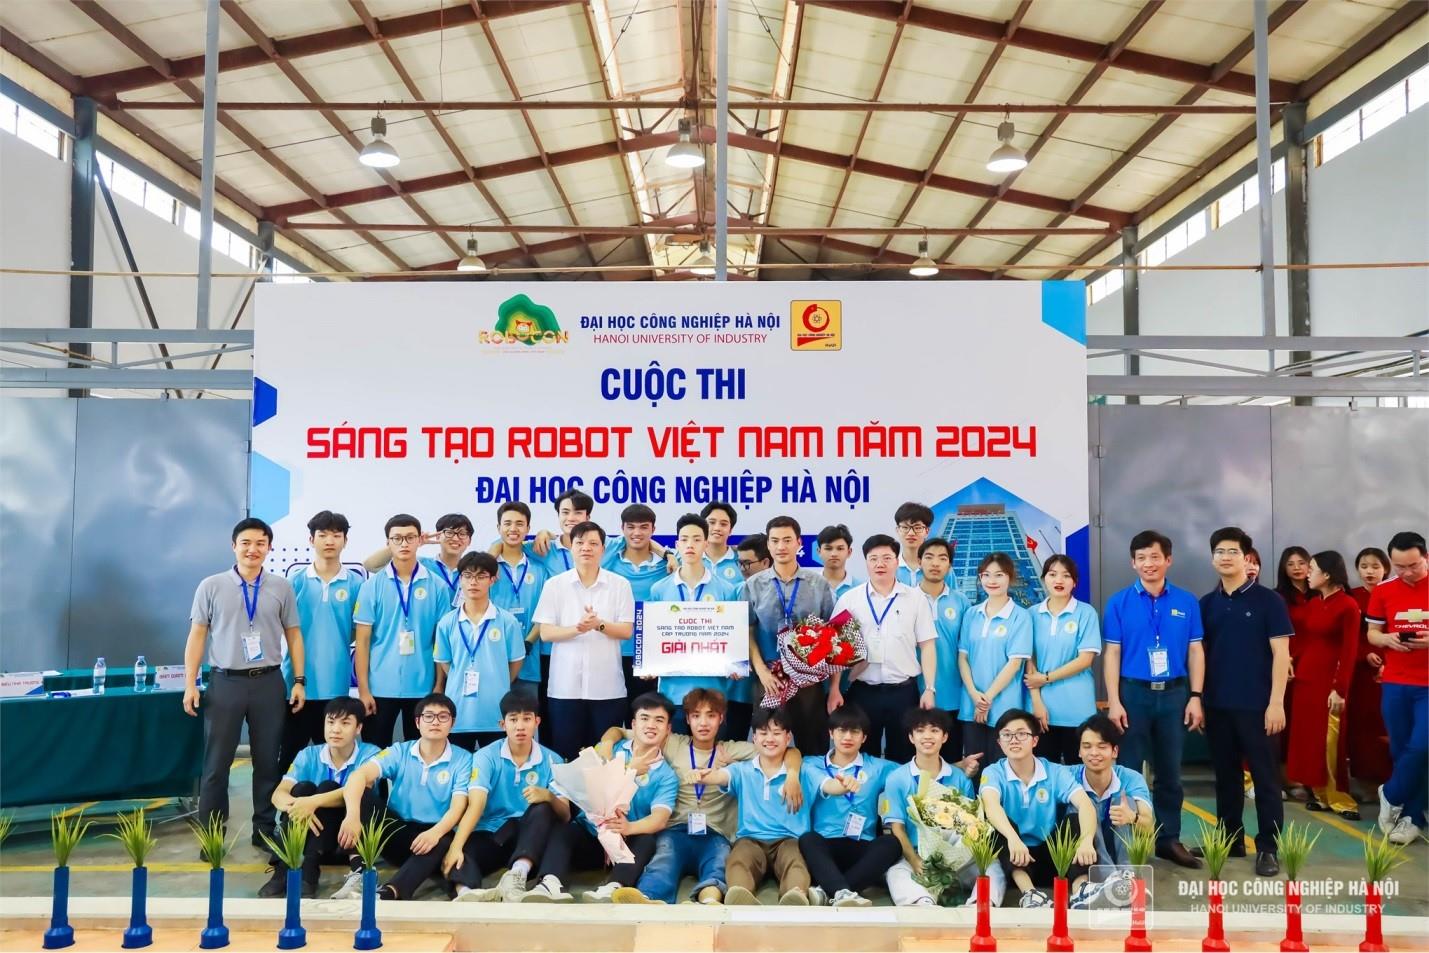 [khcncongthuong] Đại học Công nghiệp Hà Nội: Khuyến khích đẩy mạnh các cuộc thi Robocon